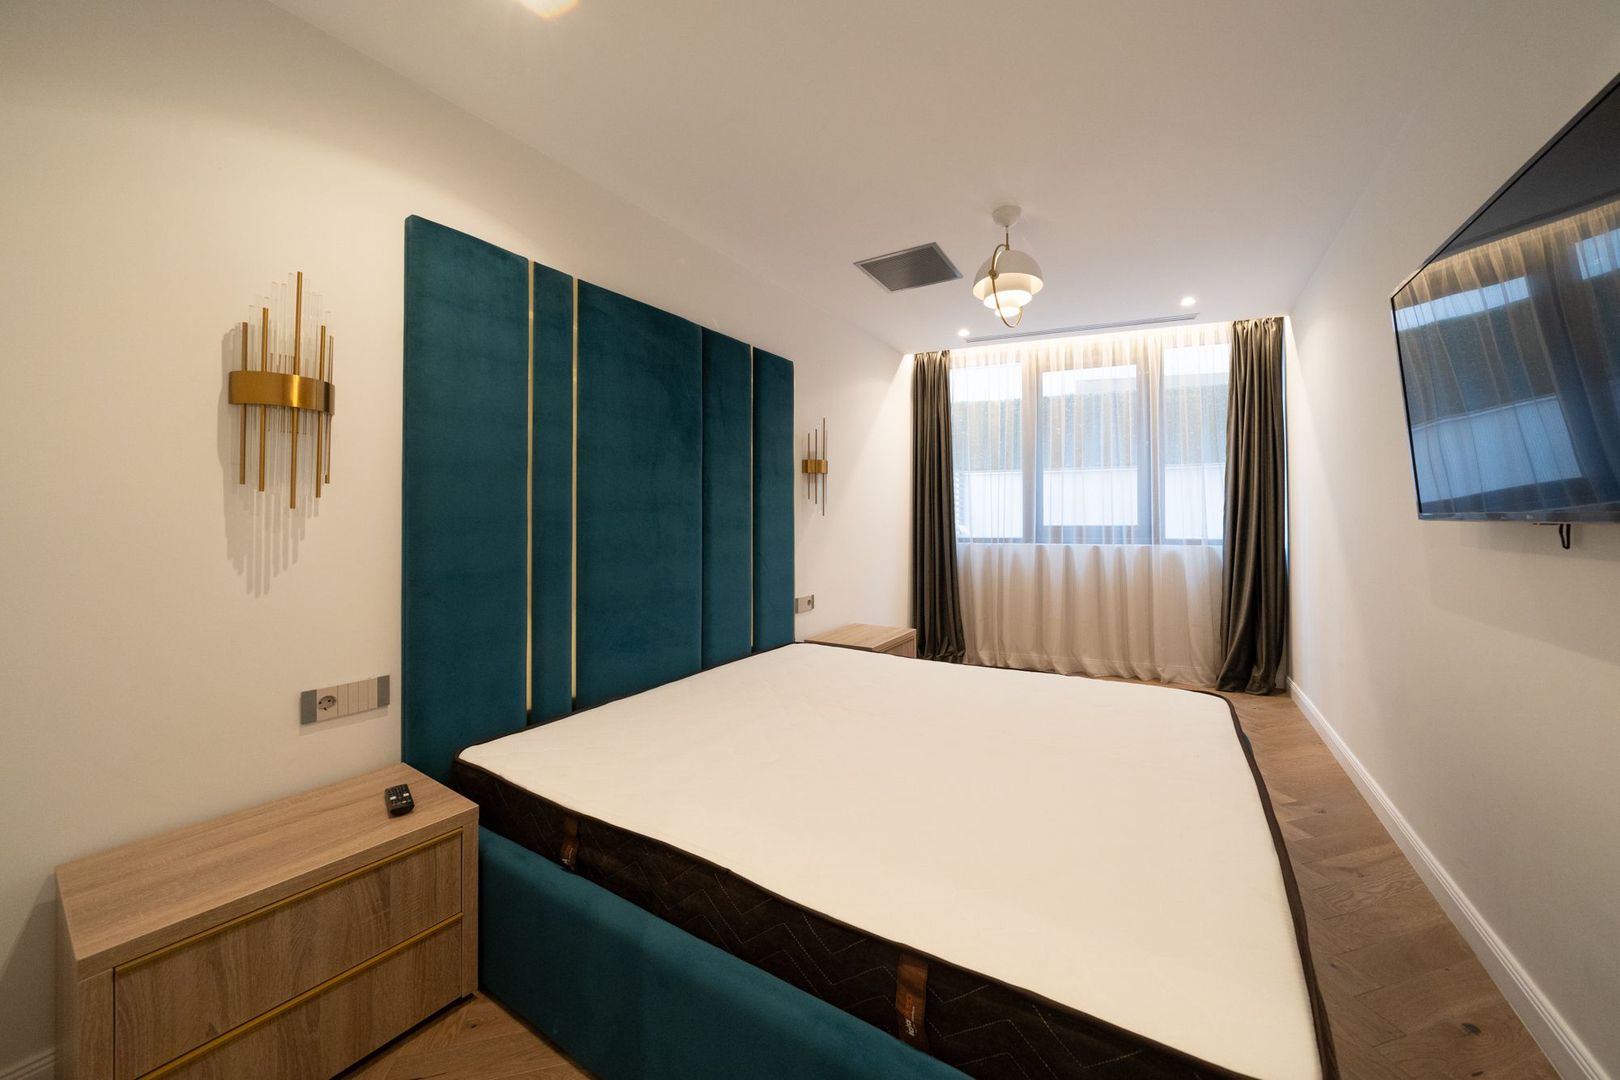 Luxury Homes | 2 bedroom for rent | Herastrau | Soseaua Nordului